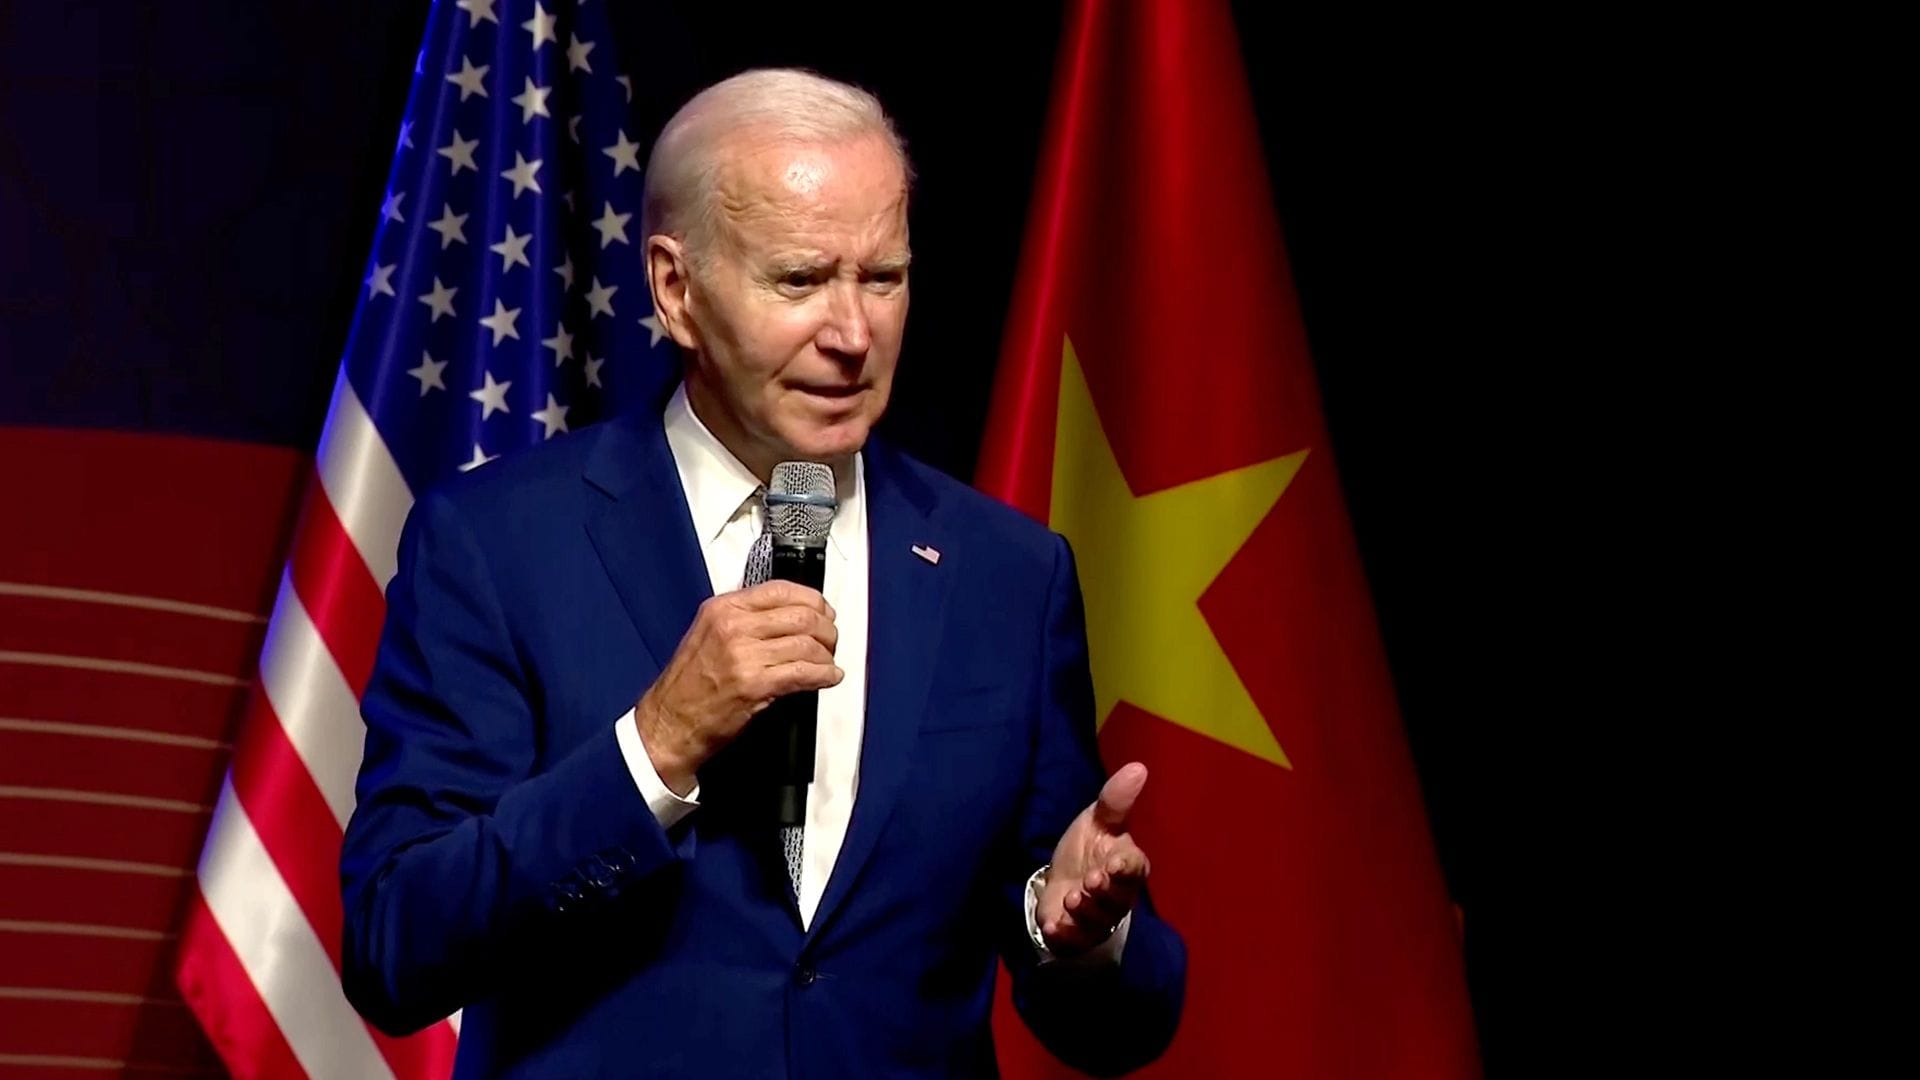 Joe Biden auf einer Pressekonferenz in Hanoi